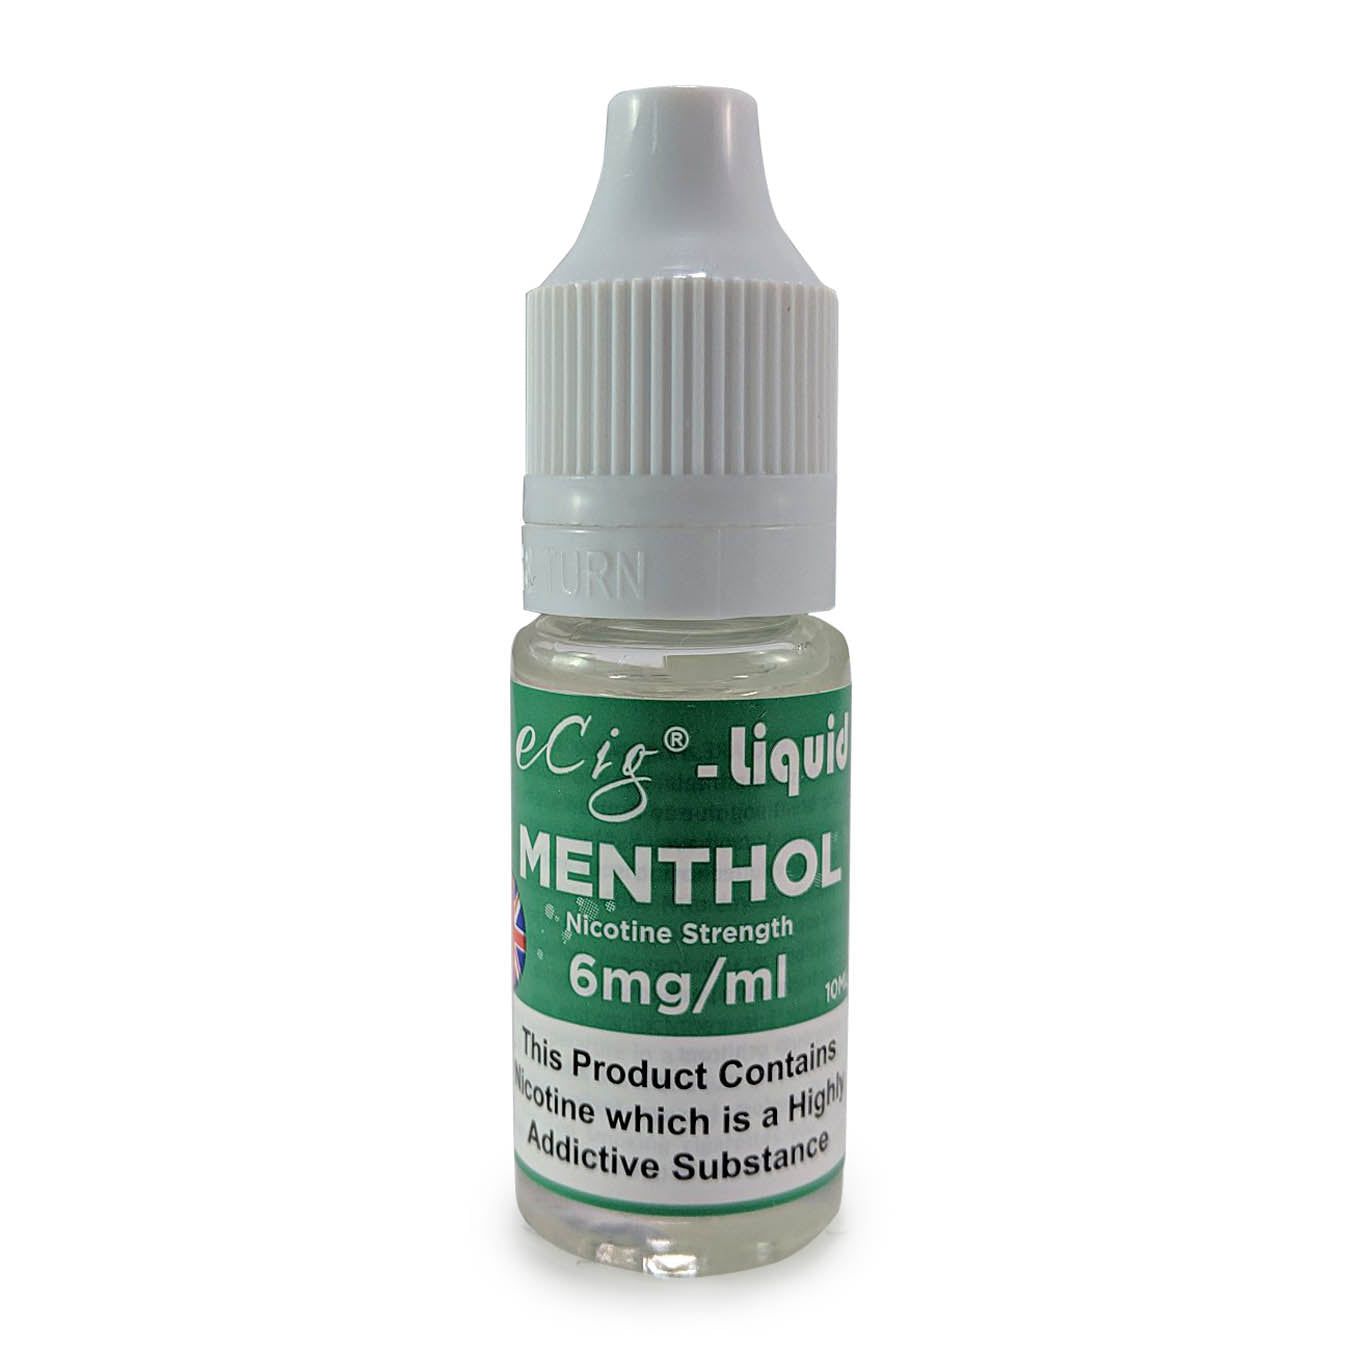 eCig-liquid Menthol 6mg 10 Pack